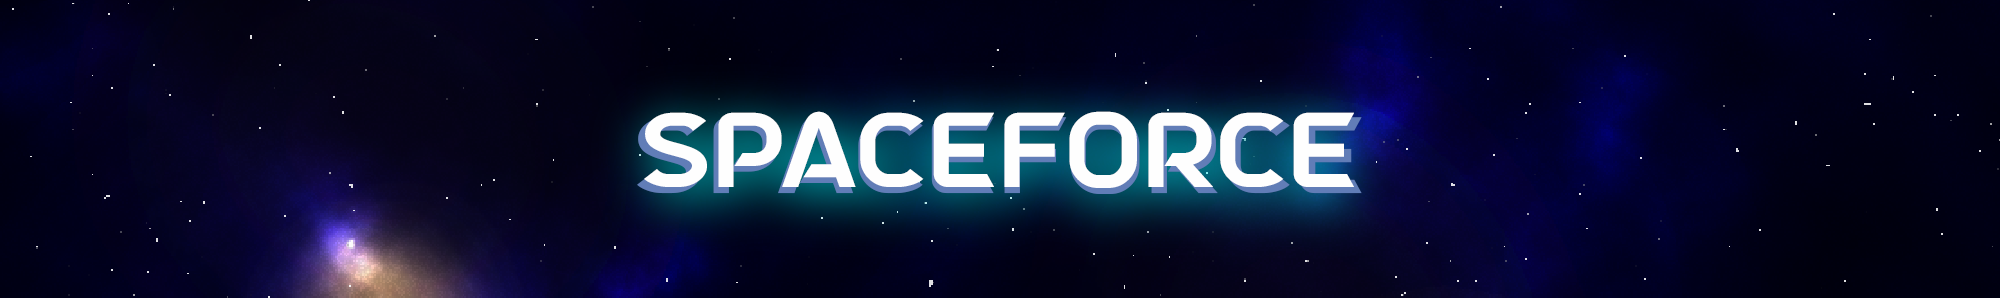 SpaceForce